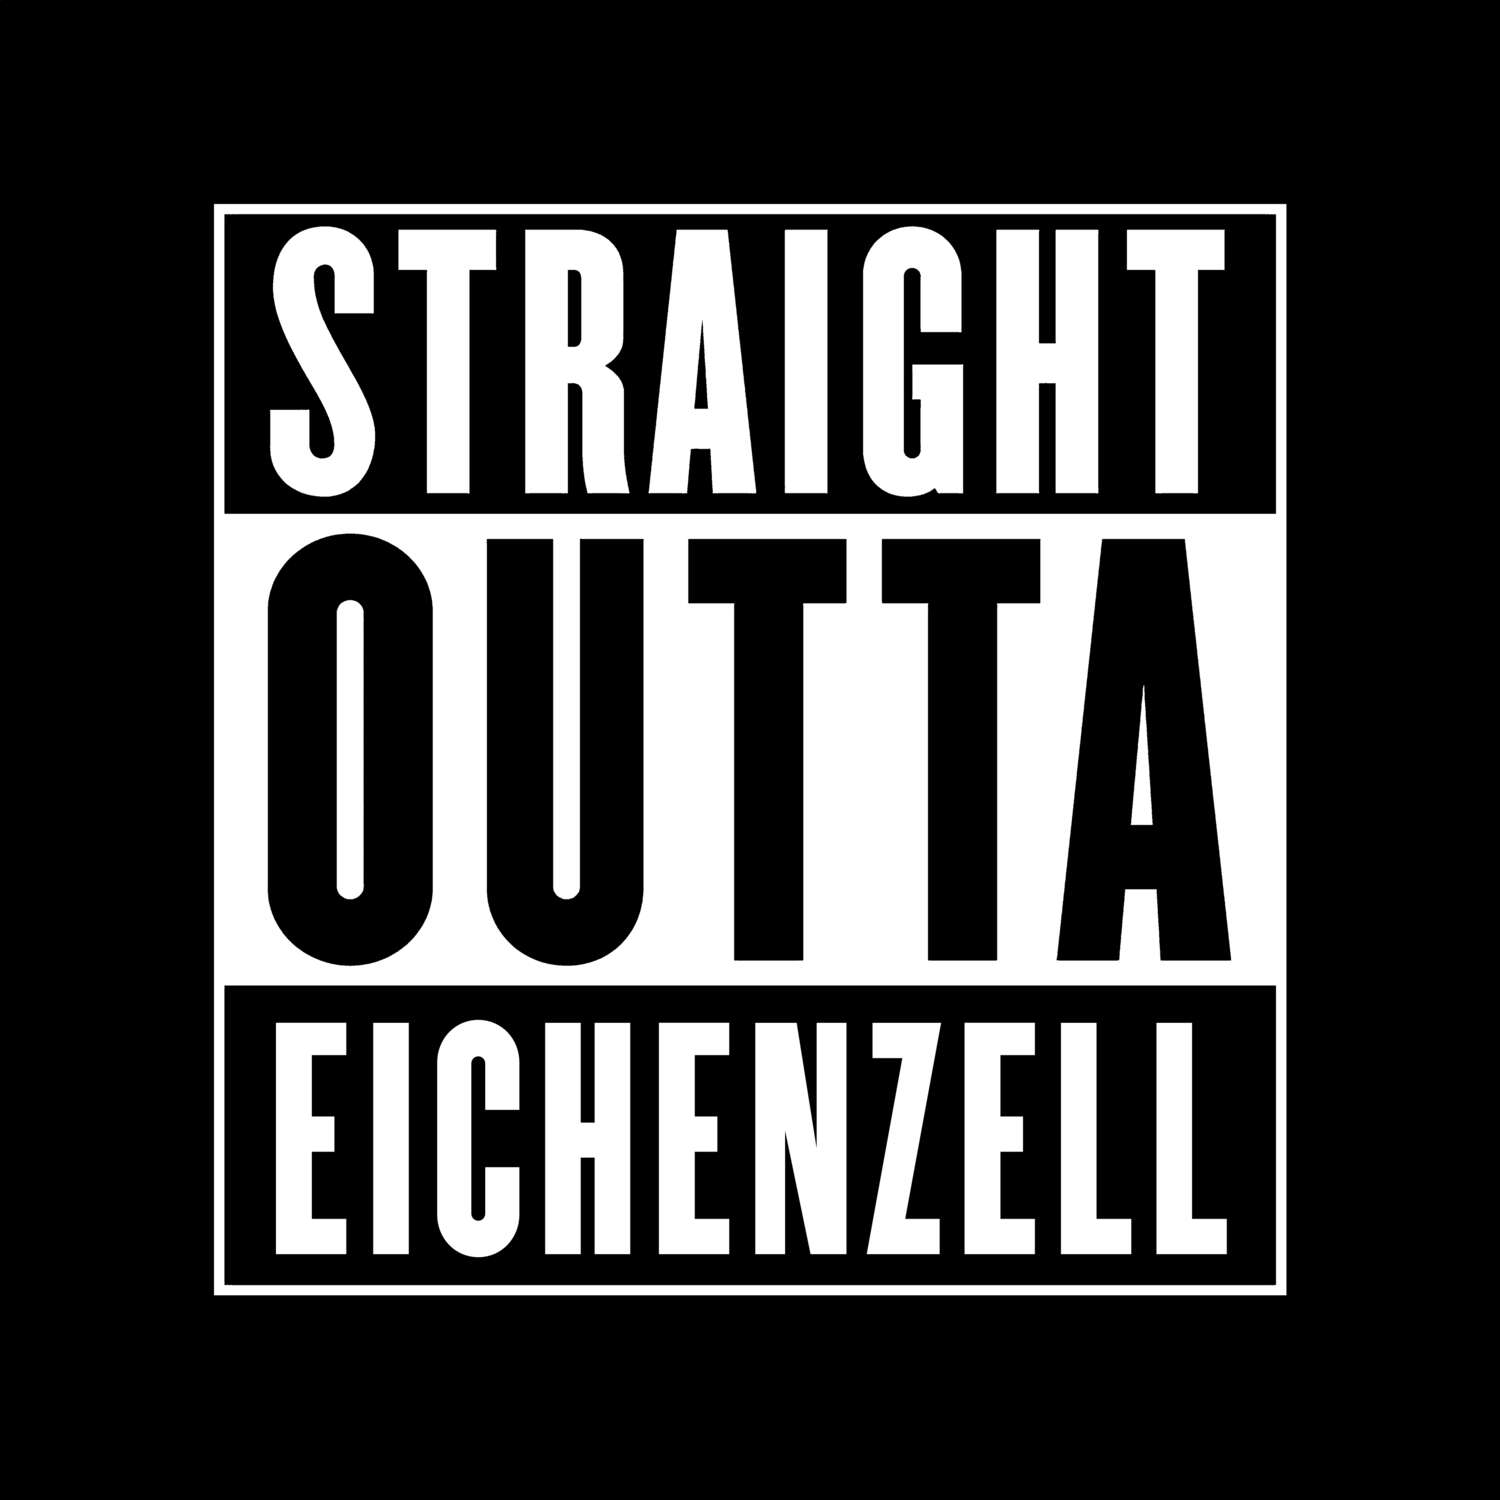 Eichenzell T-Shirt »Straight Outta«